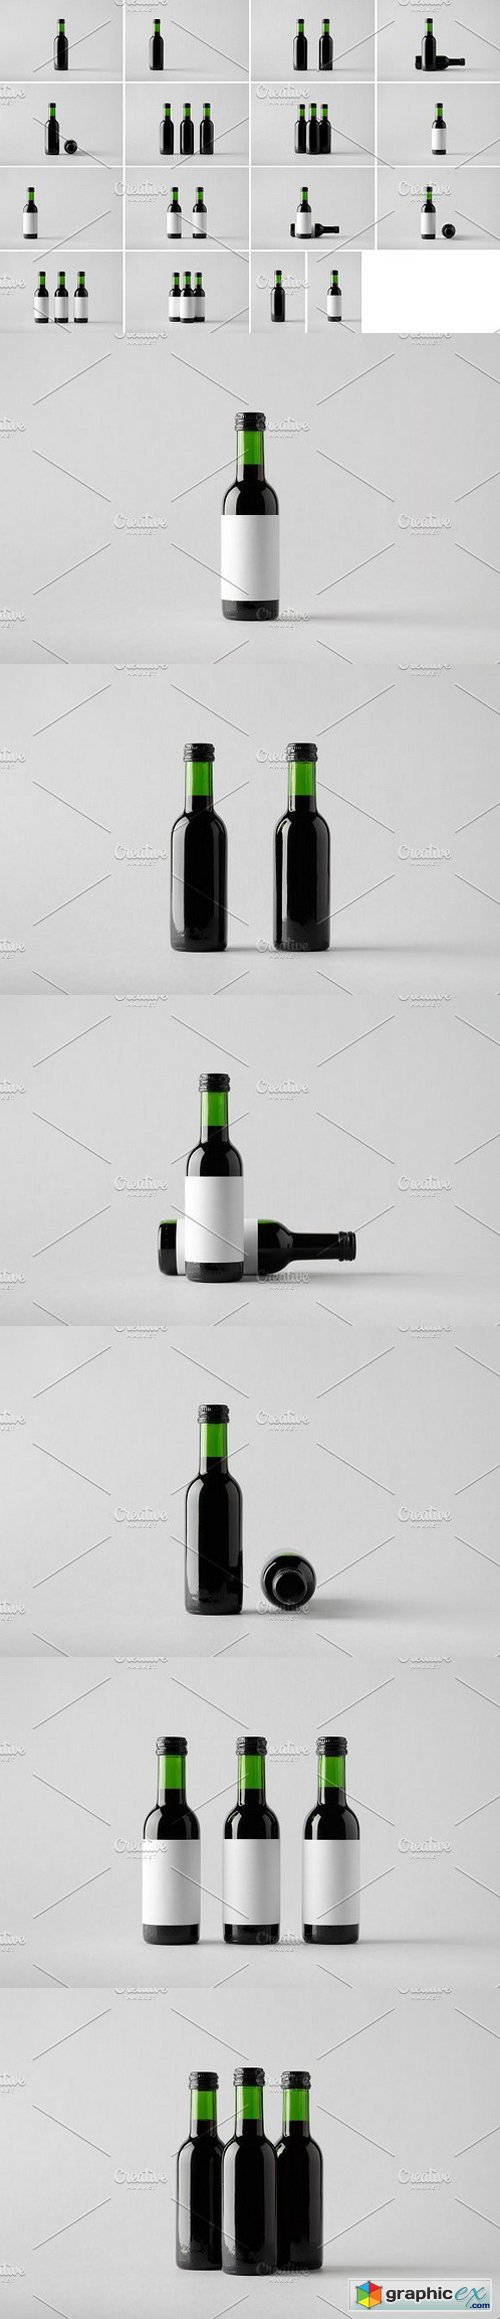 Wine Bottle Mock-Up Photo Bundle